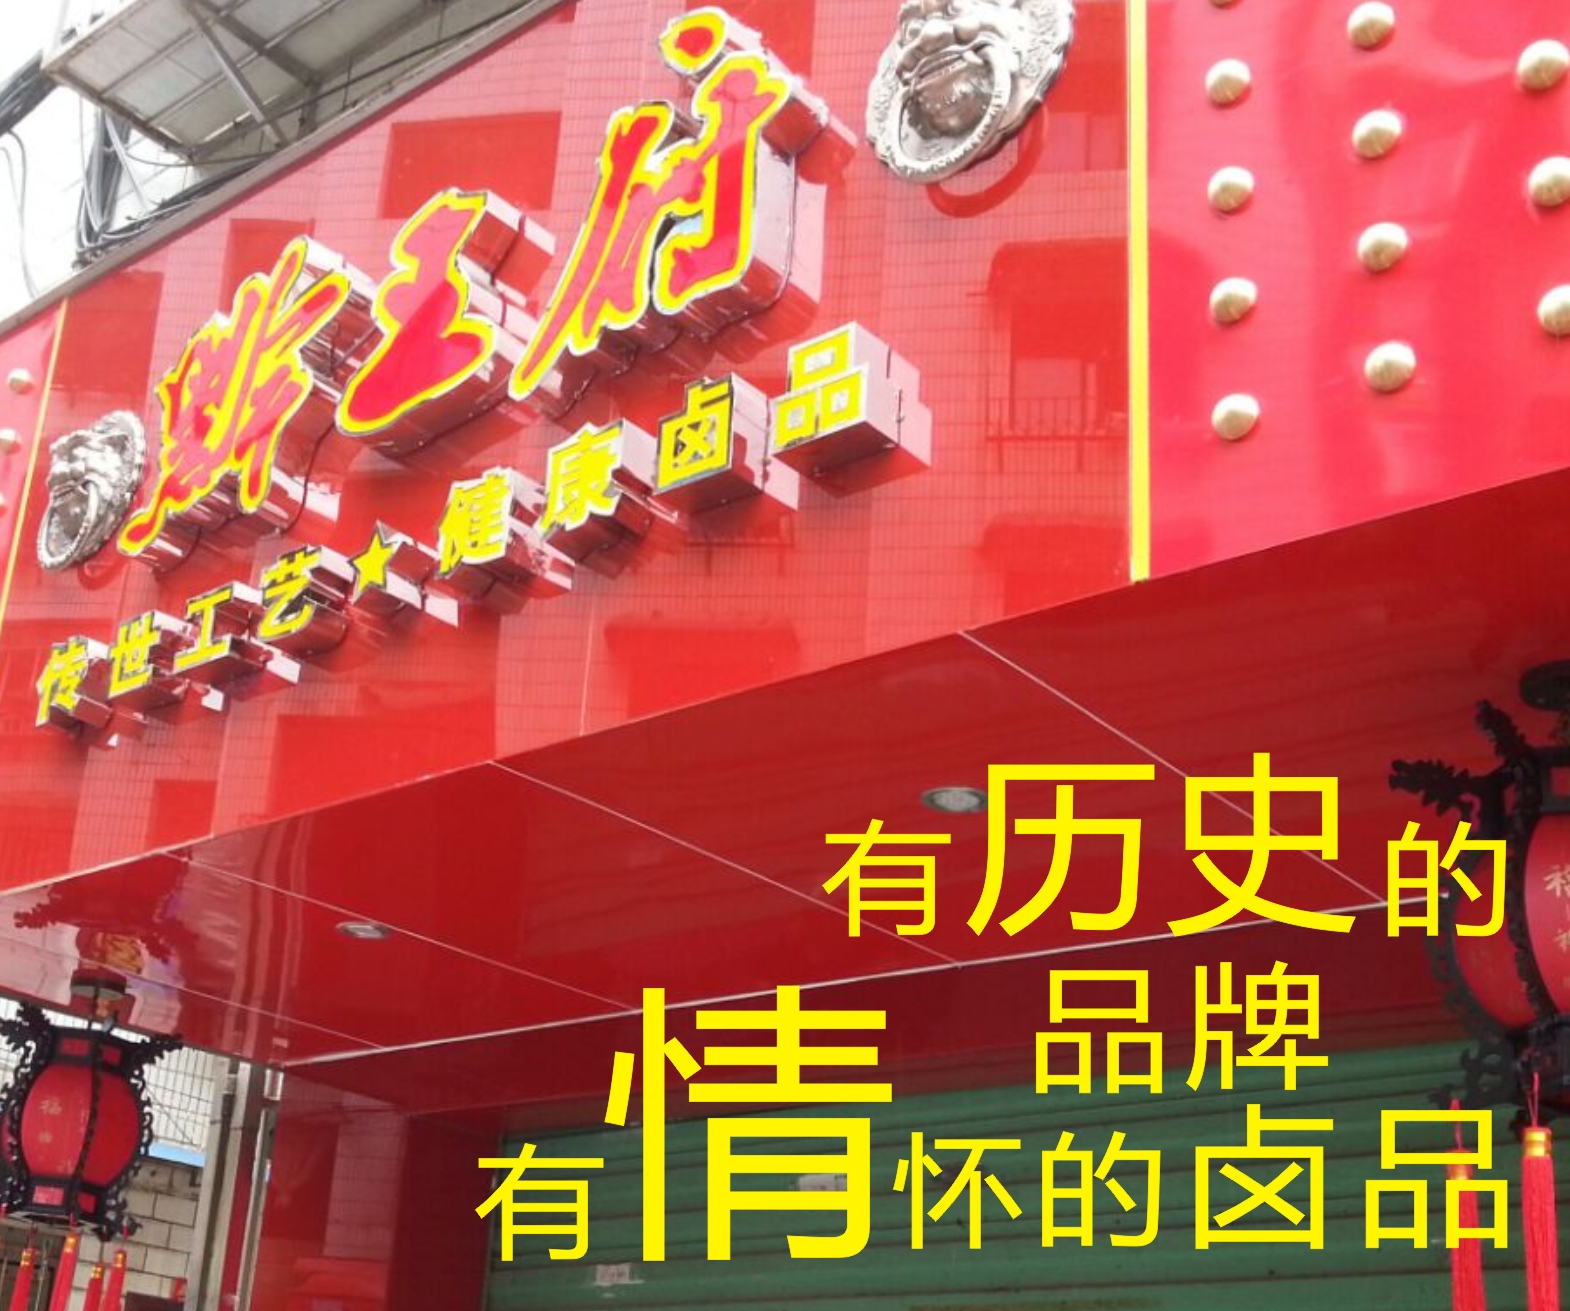 贵州黔王府风味食品有限公司